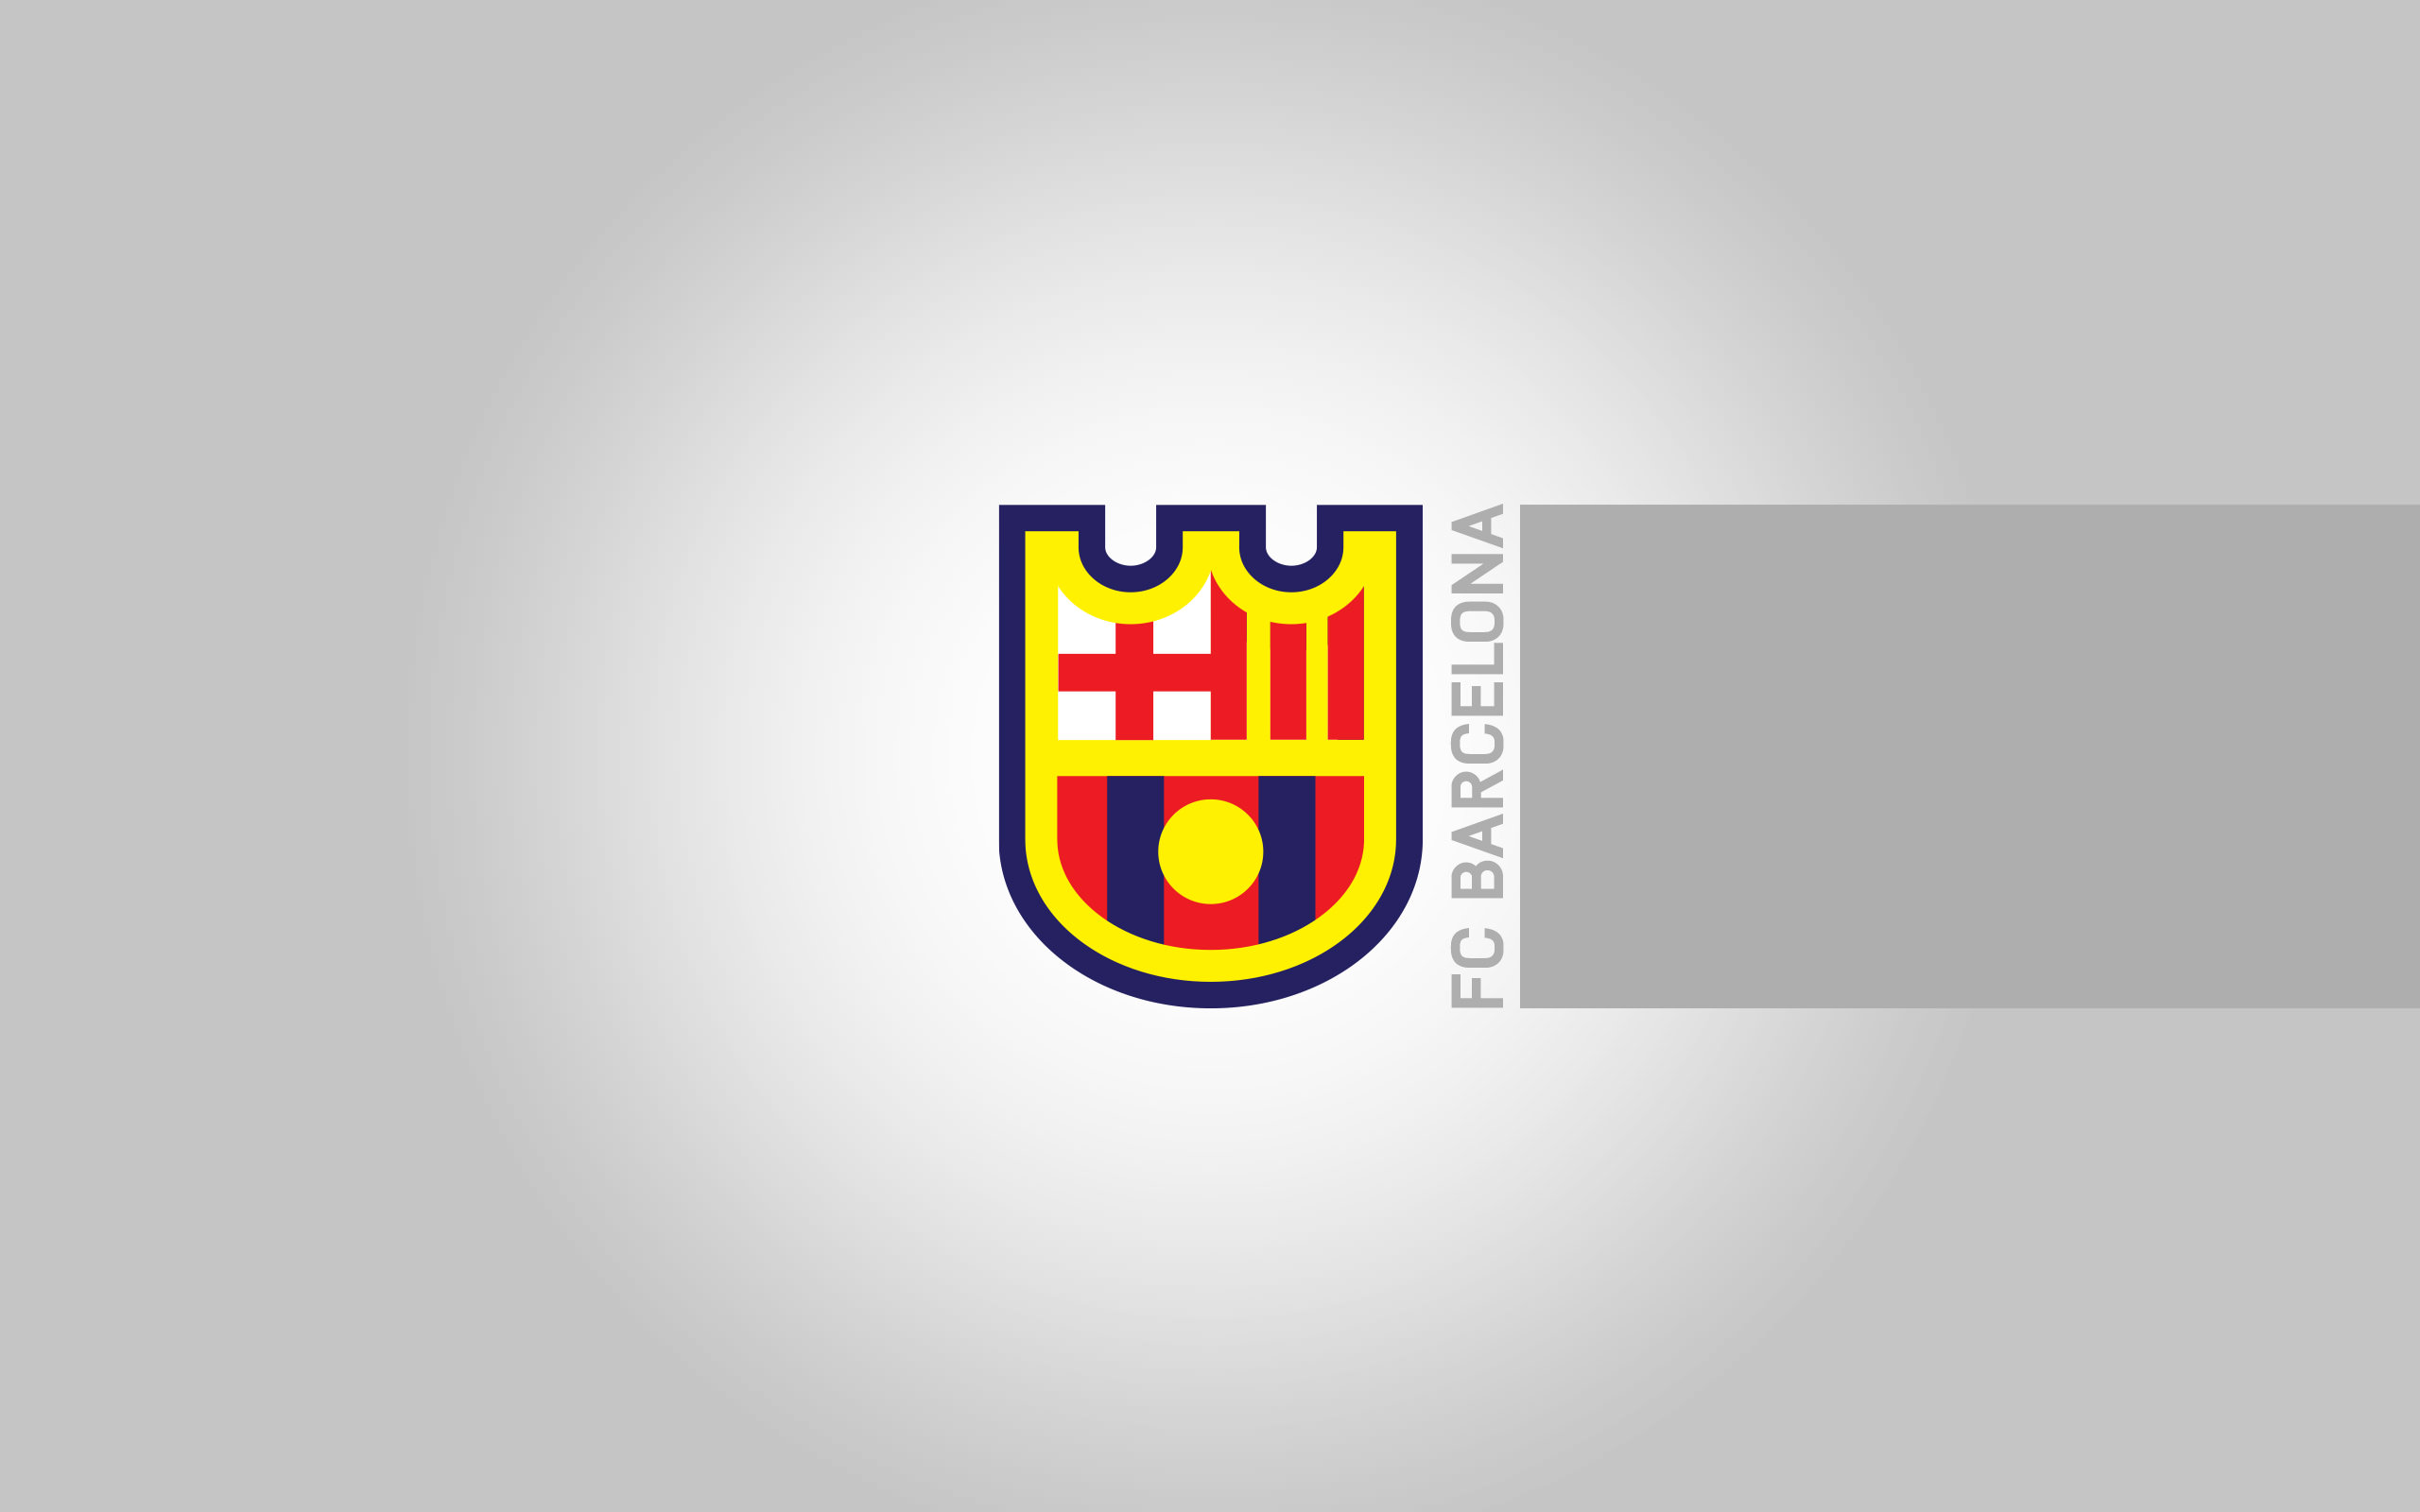 바르셀로나 벽지,깃발,상징,문장,상징,제도법